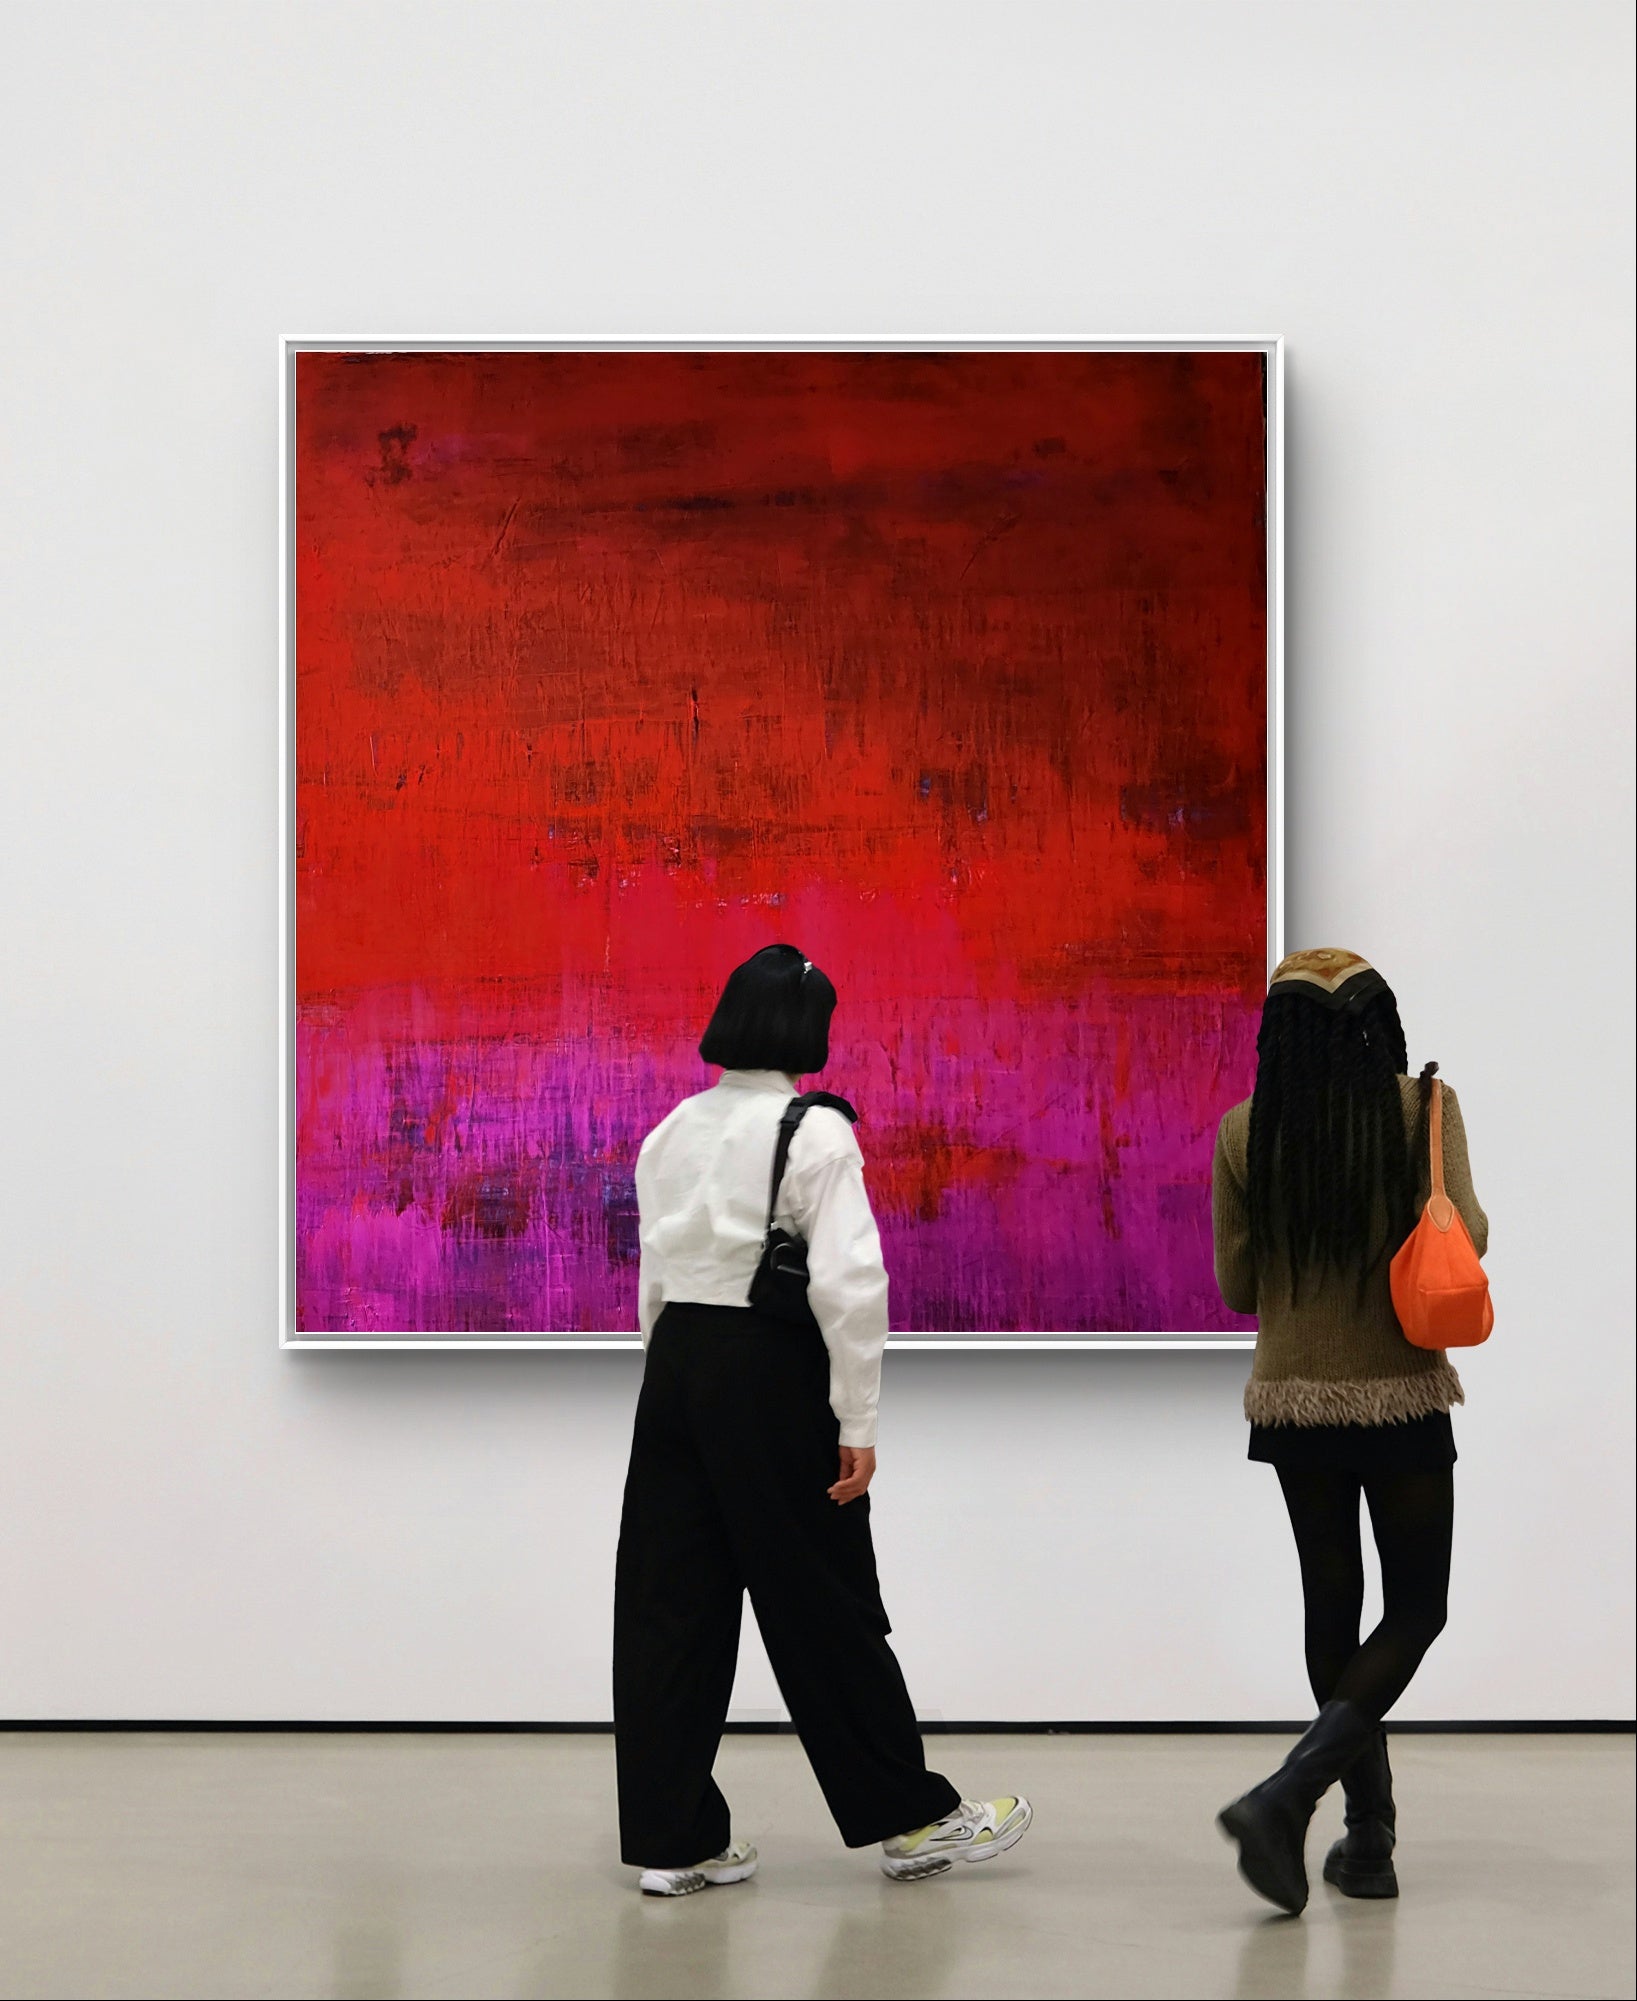 rotes großes Bild 160 x 160 cm Eyecatcher,abstrakte große Leinwandbilder abstrakte Bilder kaufen ,